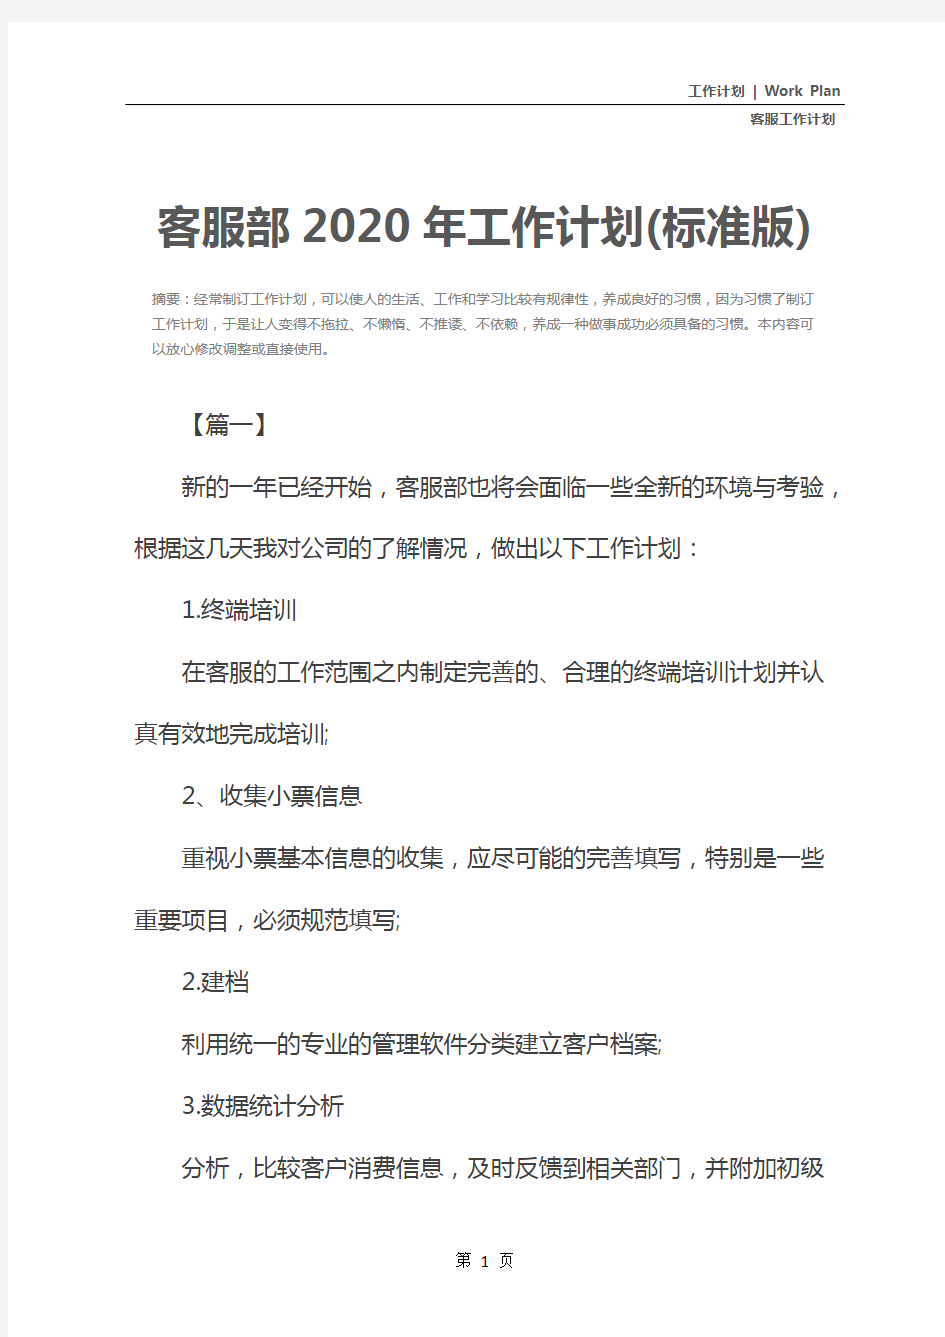 客服部2020年工作计划(标准版)